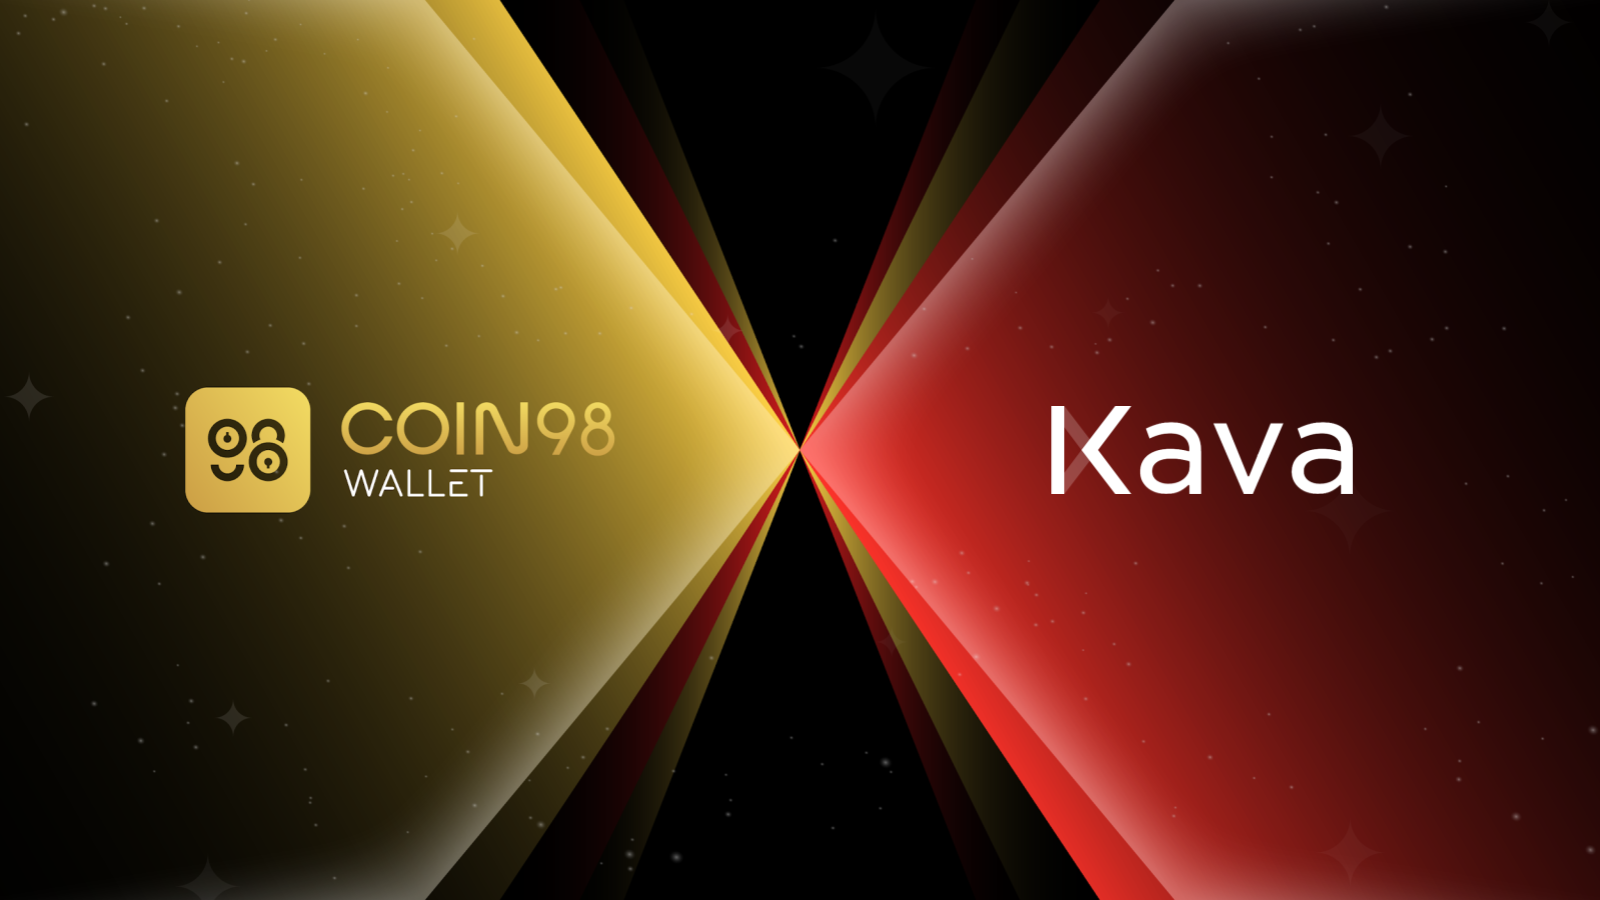 Coin98 Wallet now integrates Kava